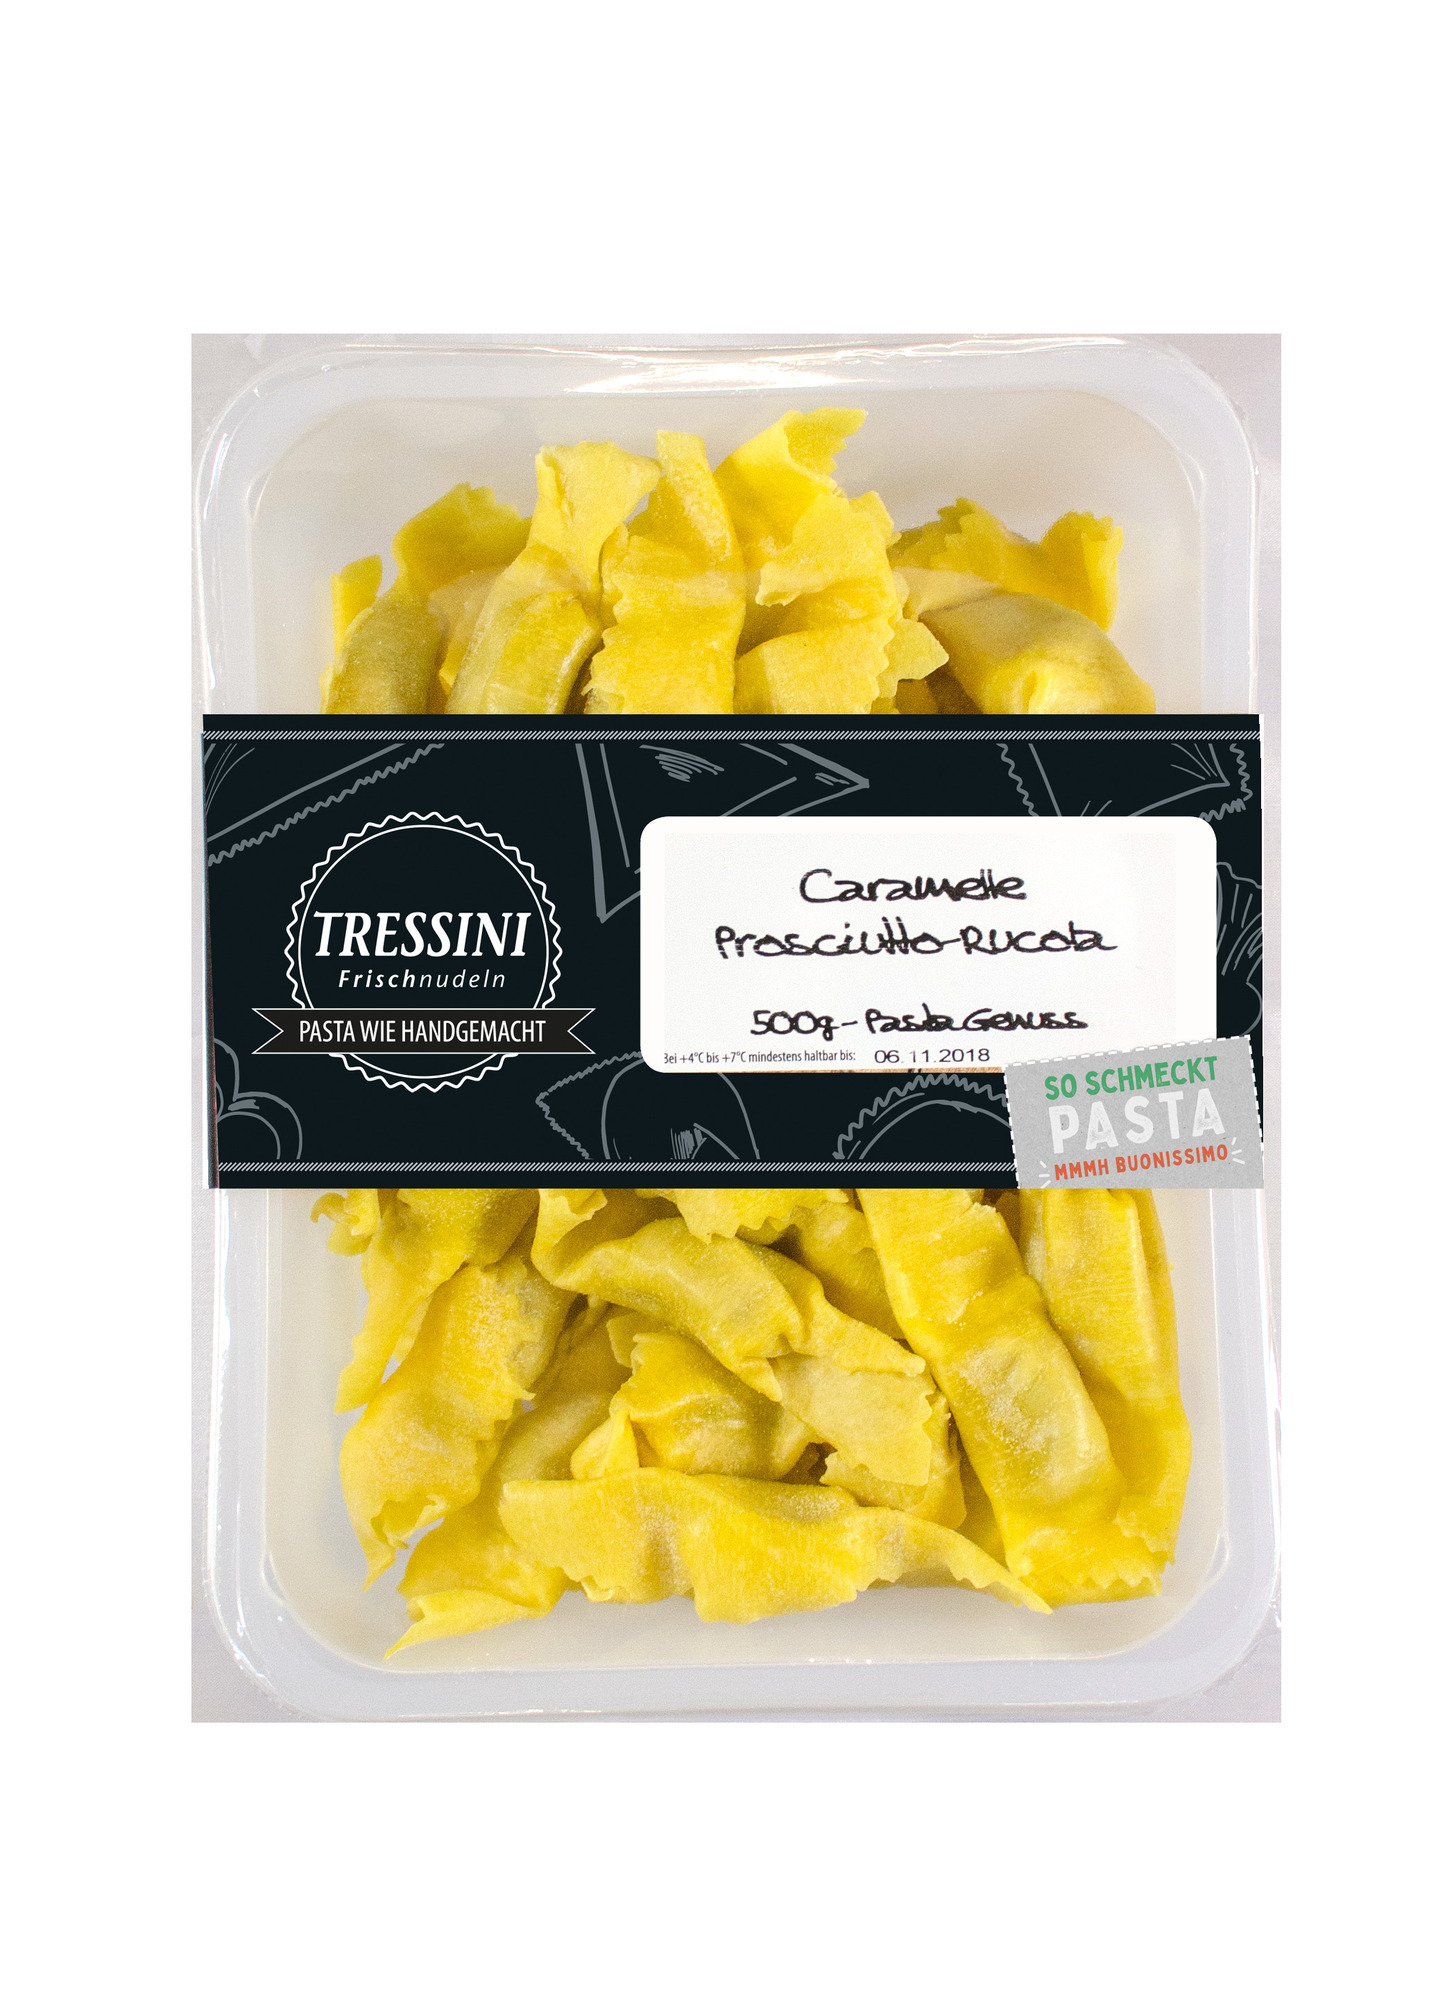 Caramelle Prosciutto-Rucola 500g